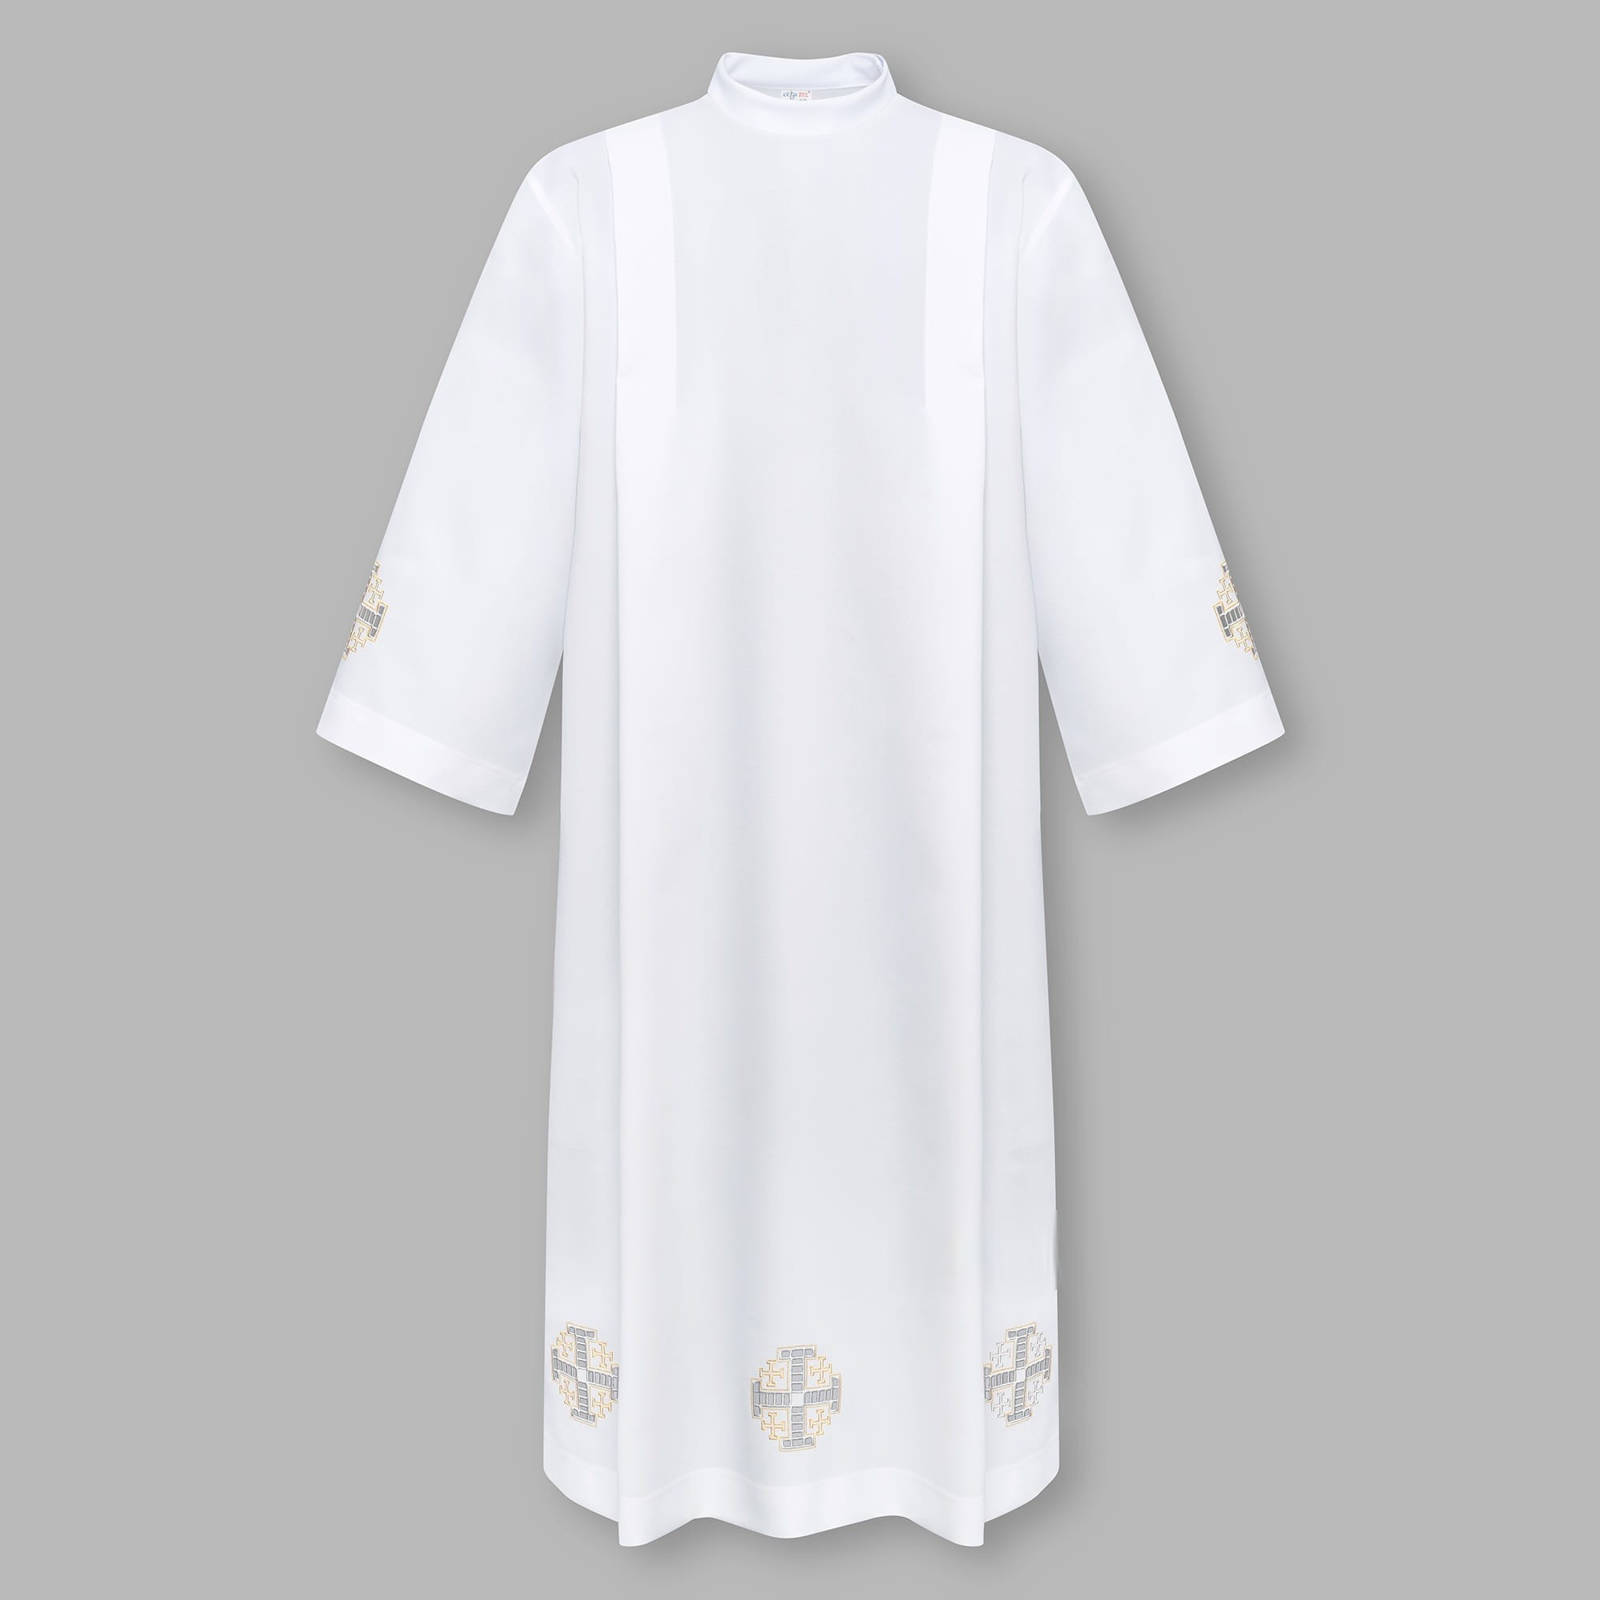 Alba kapłańska haftowana z motywem krzyża i suwakiem na ramieniu